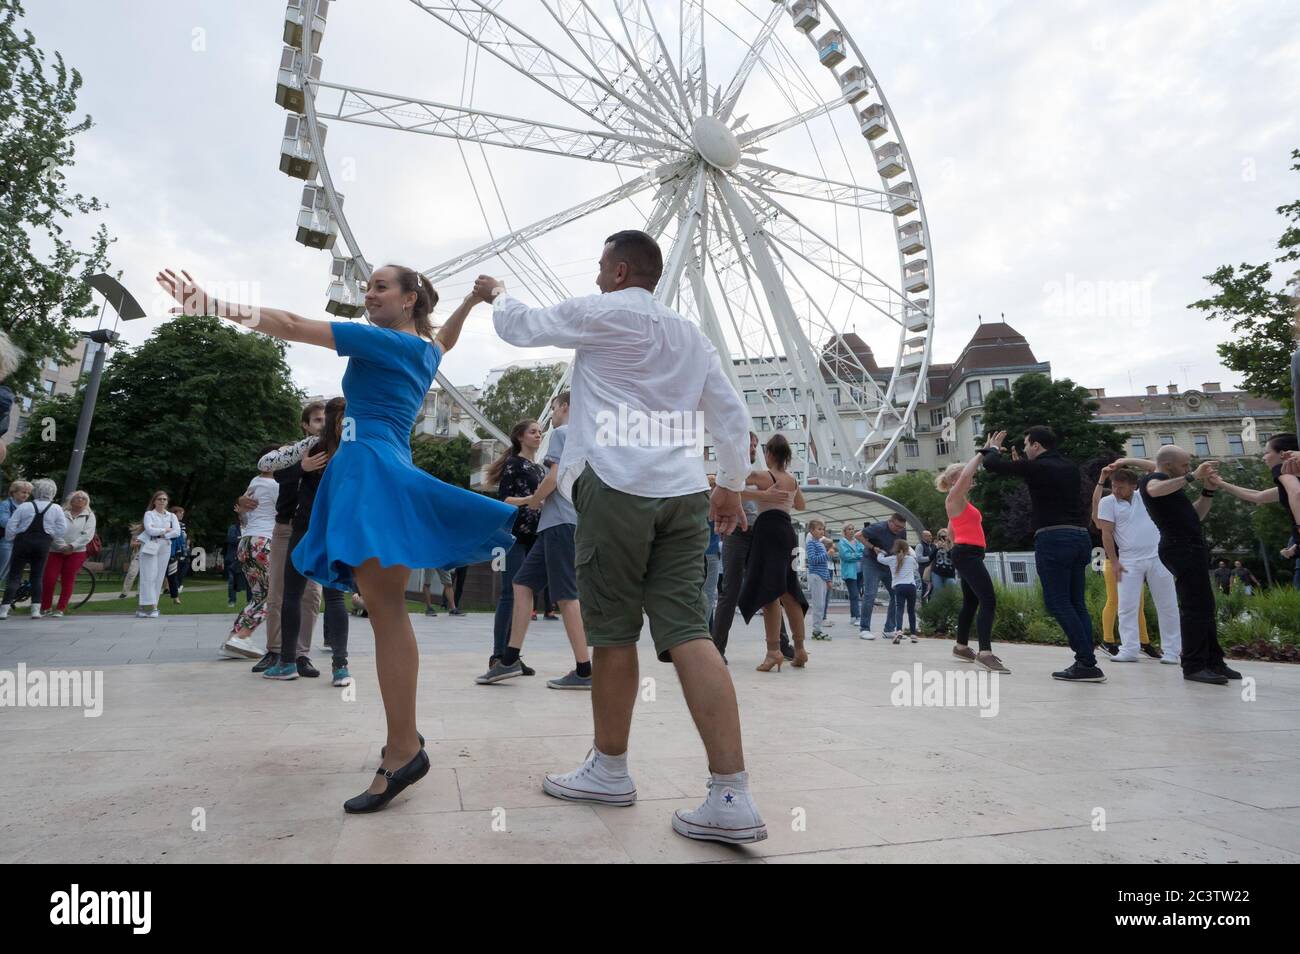 Budapest, Hongrie. 21 juin 2020. Les gens profitent d'une fête de danse sociale sur une place publique après la levée des restrictions COVID-19 dans le centre-ville de Budapest, en Hongrie, le 21 juin 2020. Crédit: Attila Volgyi/Xinhua/Alay Live News Banque D'Images